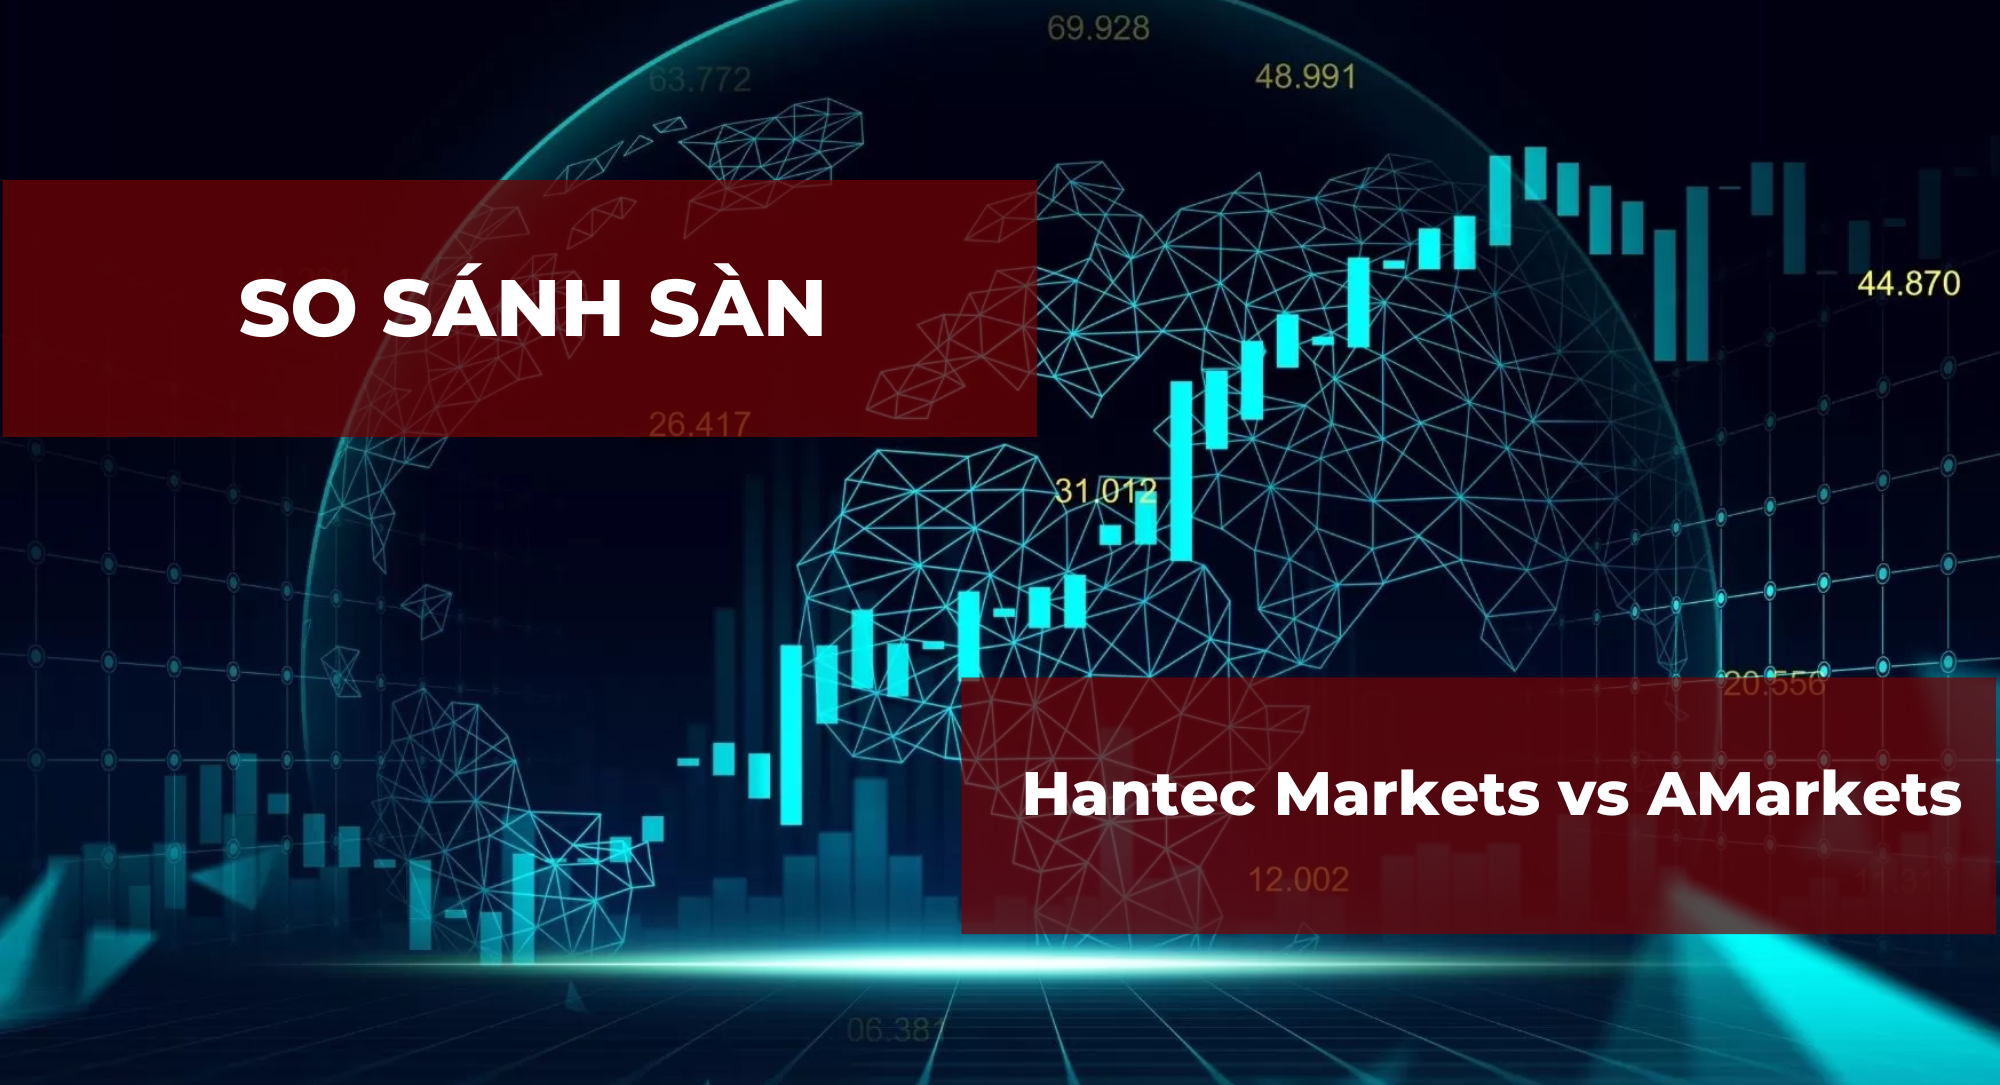 So sánh sàn Hantec Markets và AMarkets chi tiết